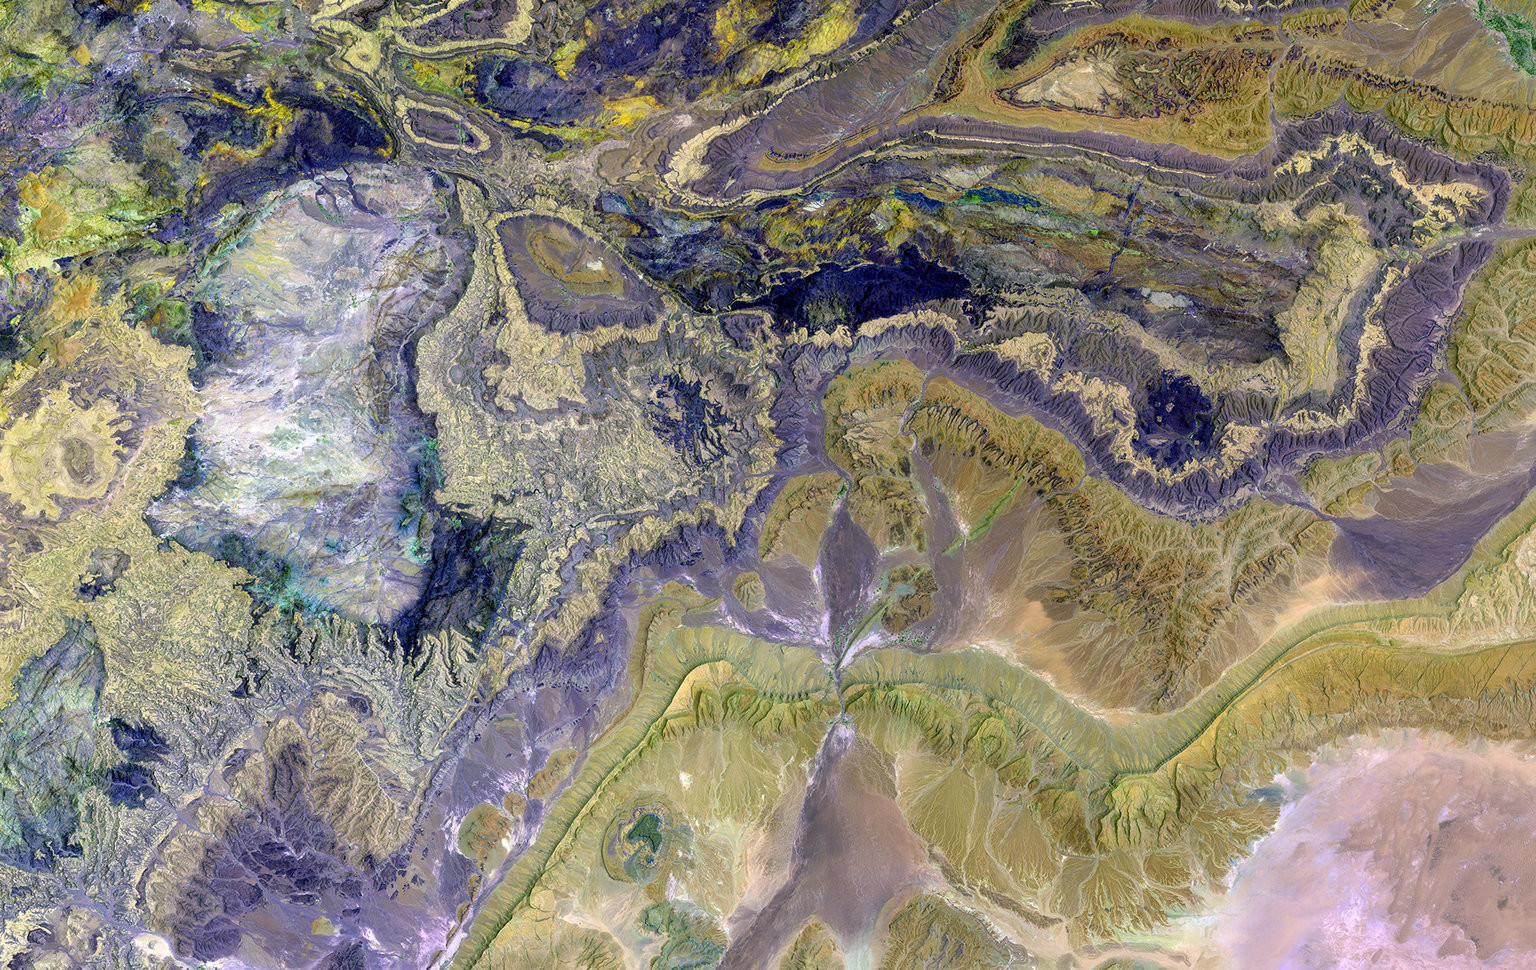 Горный хребет Антиатласа, юго-западная часть горной системы Атлас в южной части Марокко, Африка. Измененные цвета показывают разнообразие минеральных ресурсов Антиатласа.